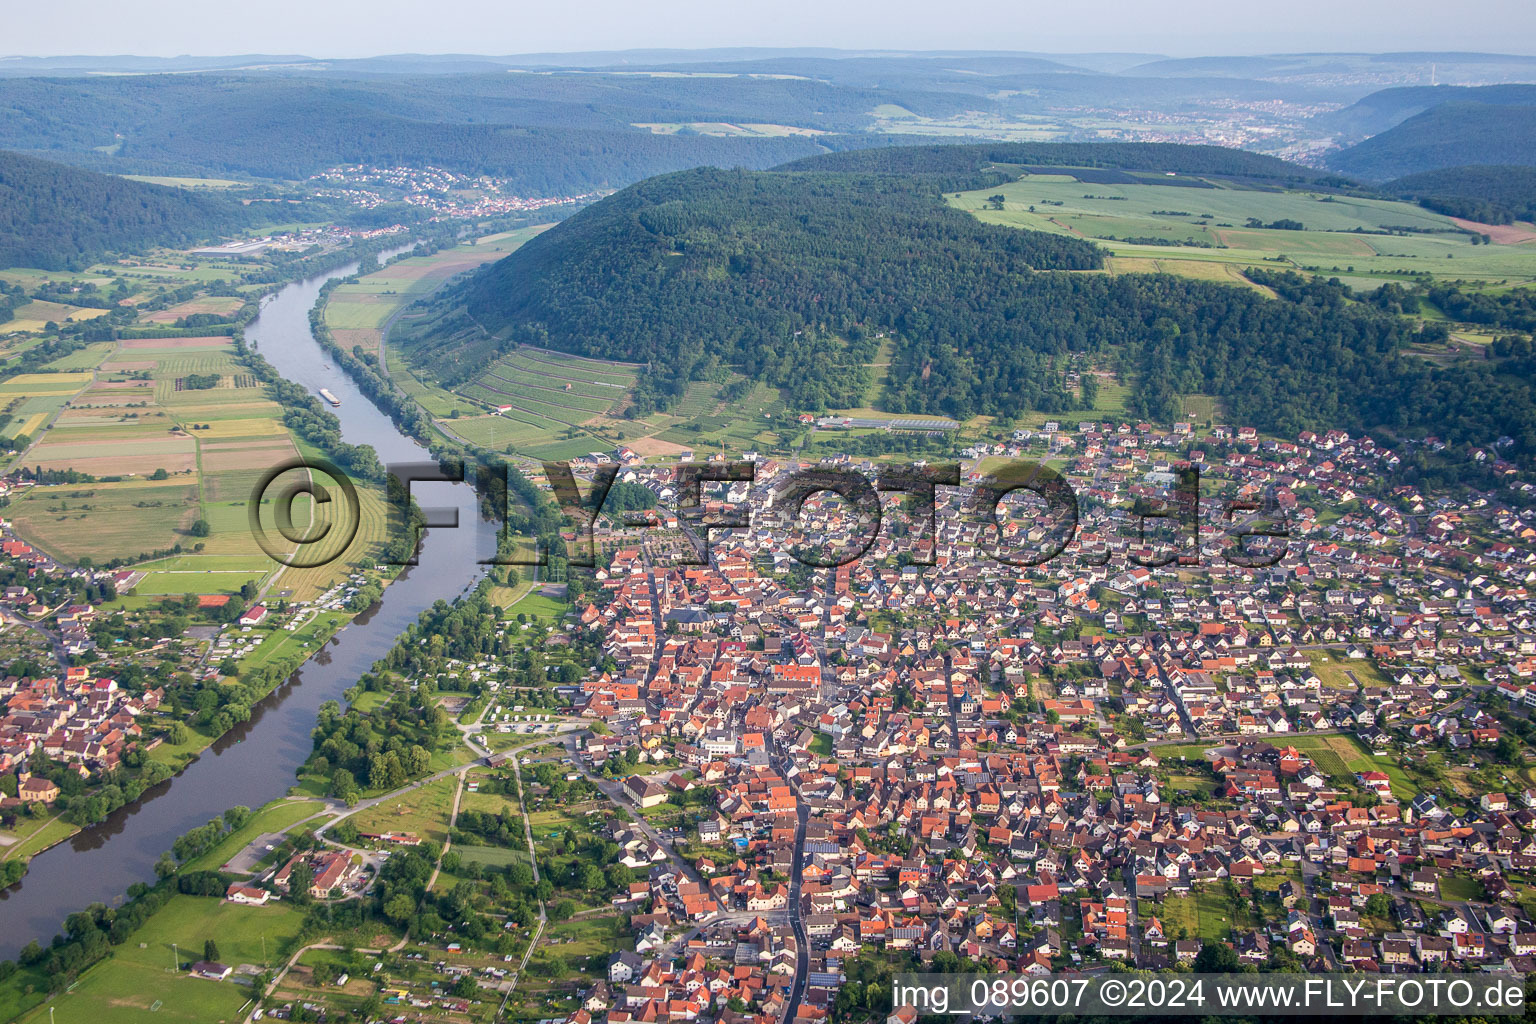 Luftbild von Ortskern am Uferbereich des Main - Flußverlaufes in Großheubach im Bundesland Bayern, Deutschland